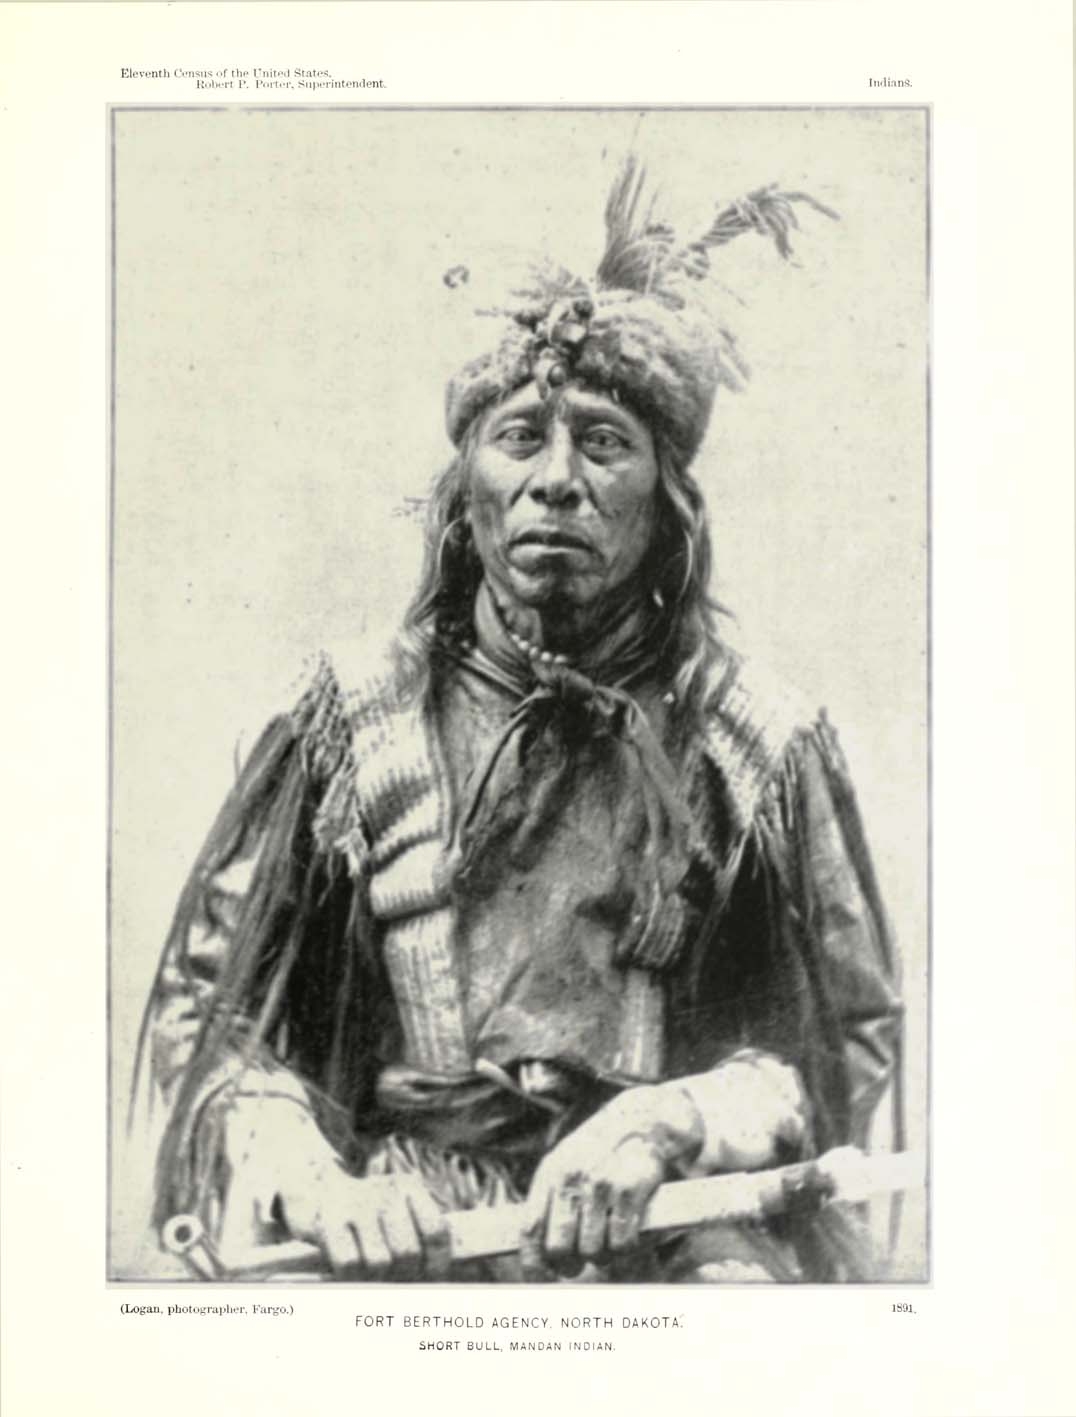 http://www.american-tribes.com/messageboards/dietmar/ShortBullMandan1891.jpg